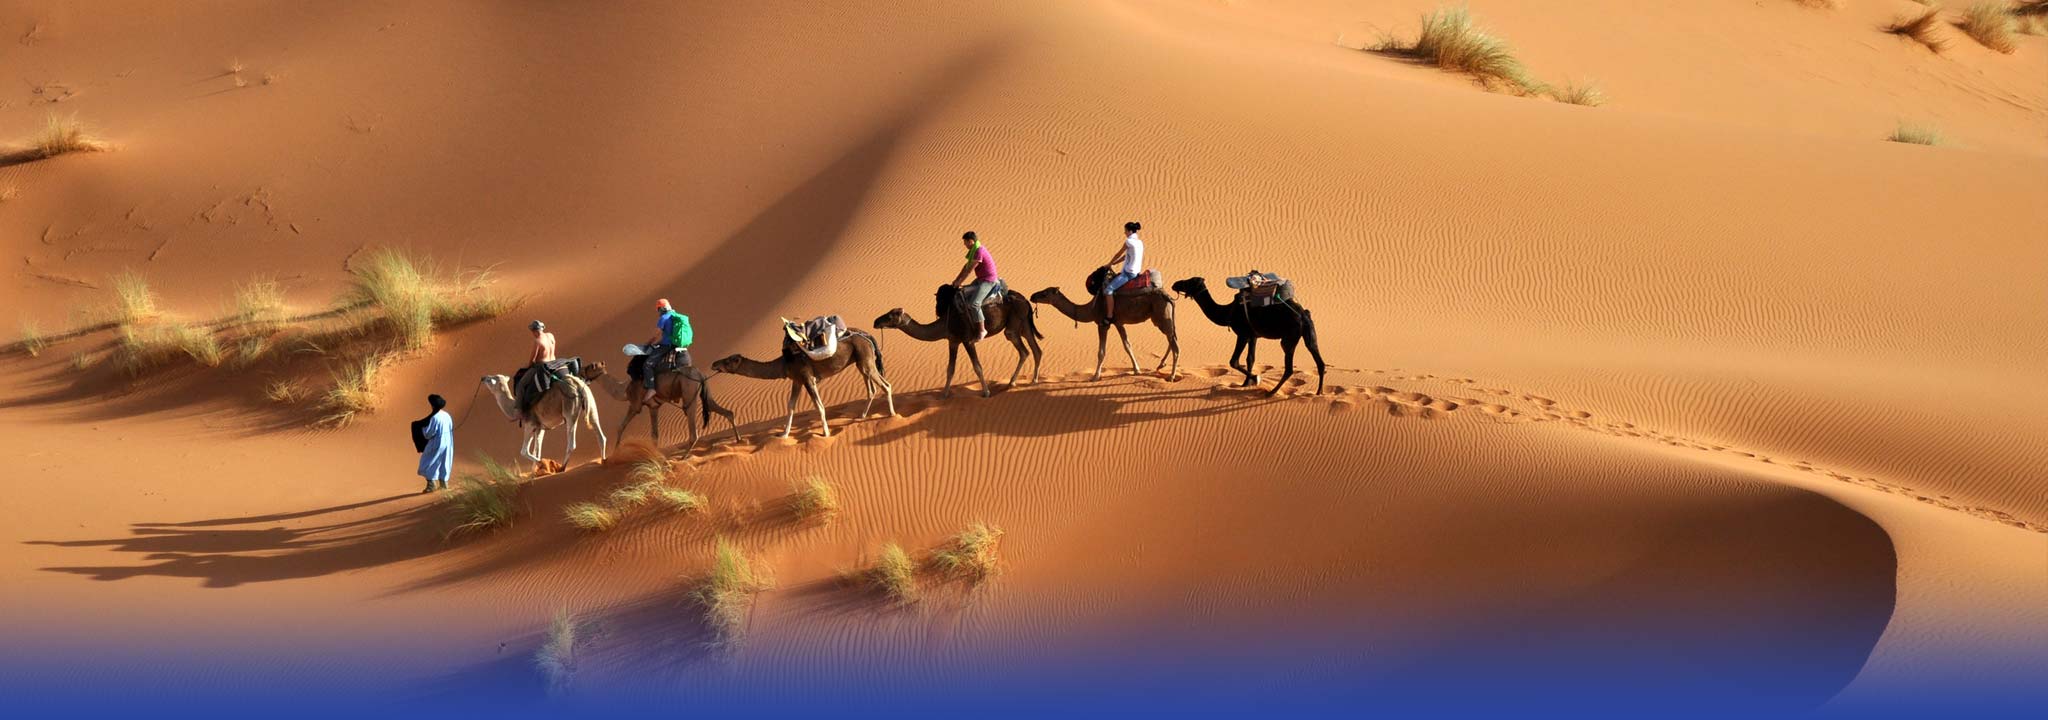 骑骆驼穿越撒哈拉沙漠